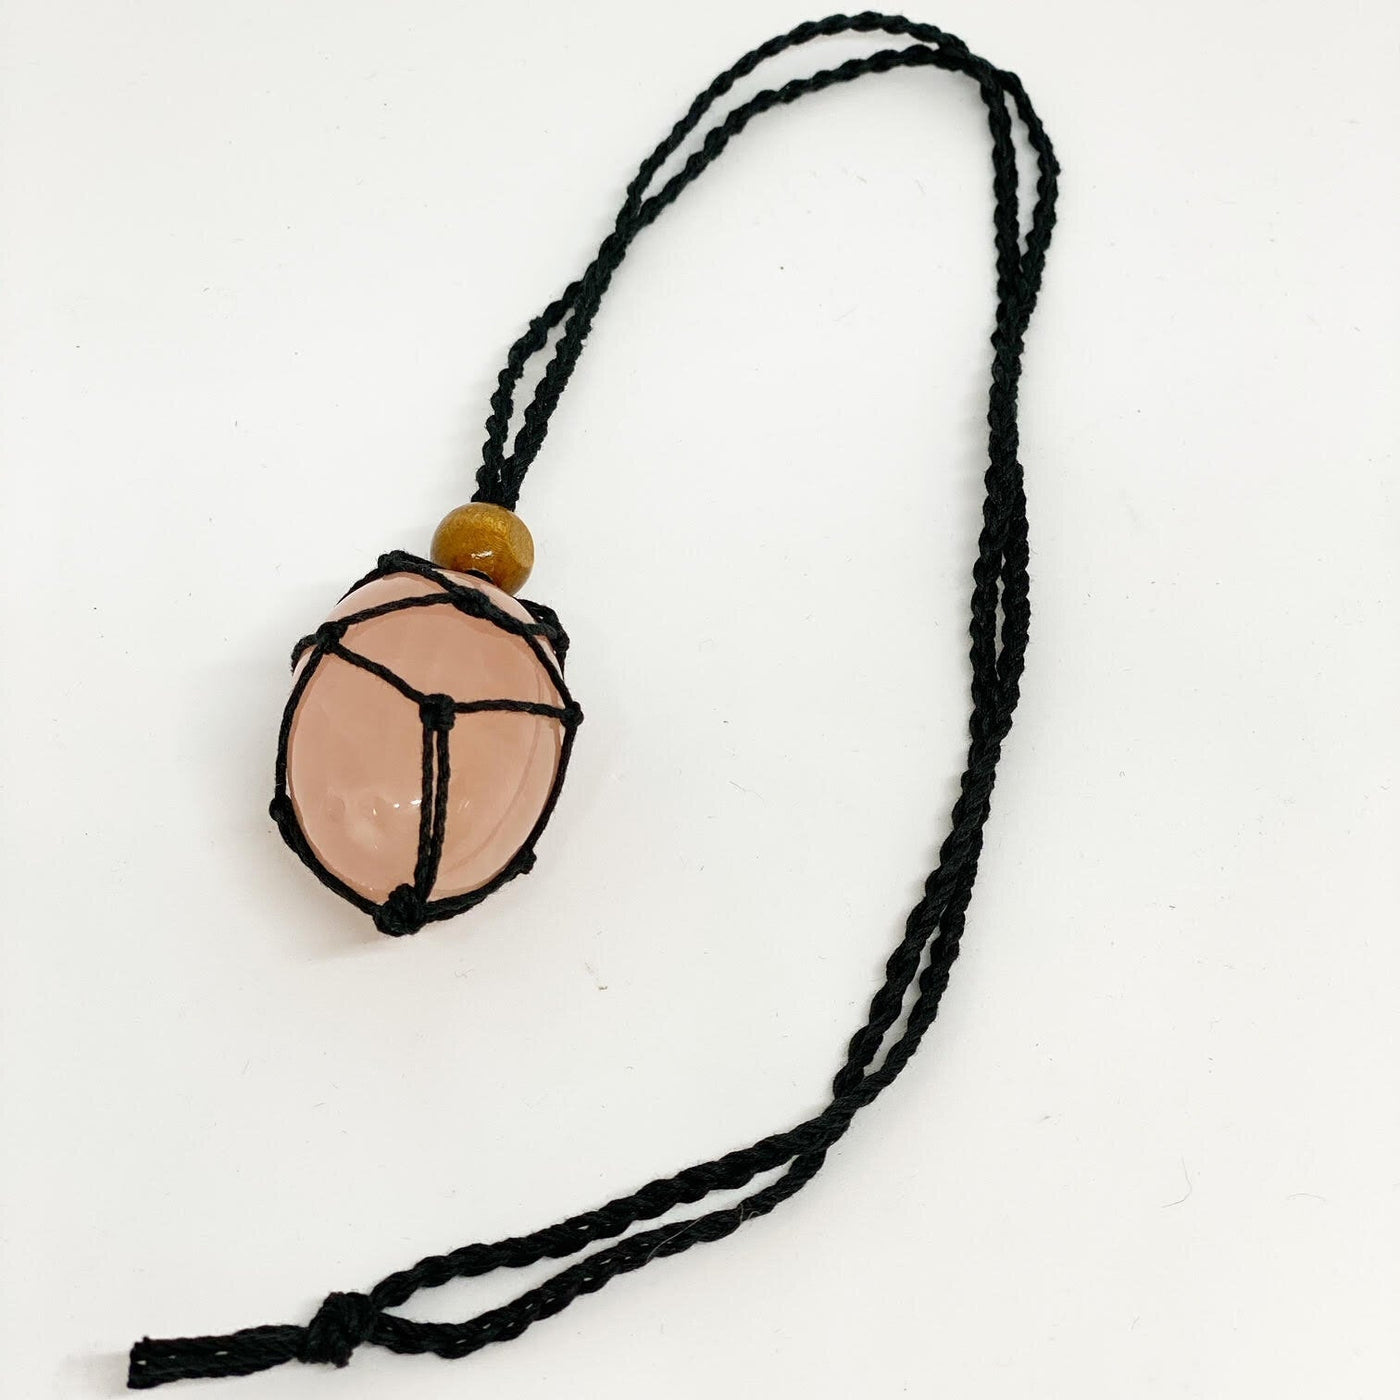 Yoni egg macrame necklaces